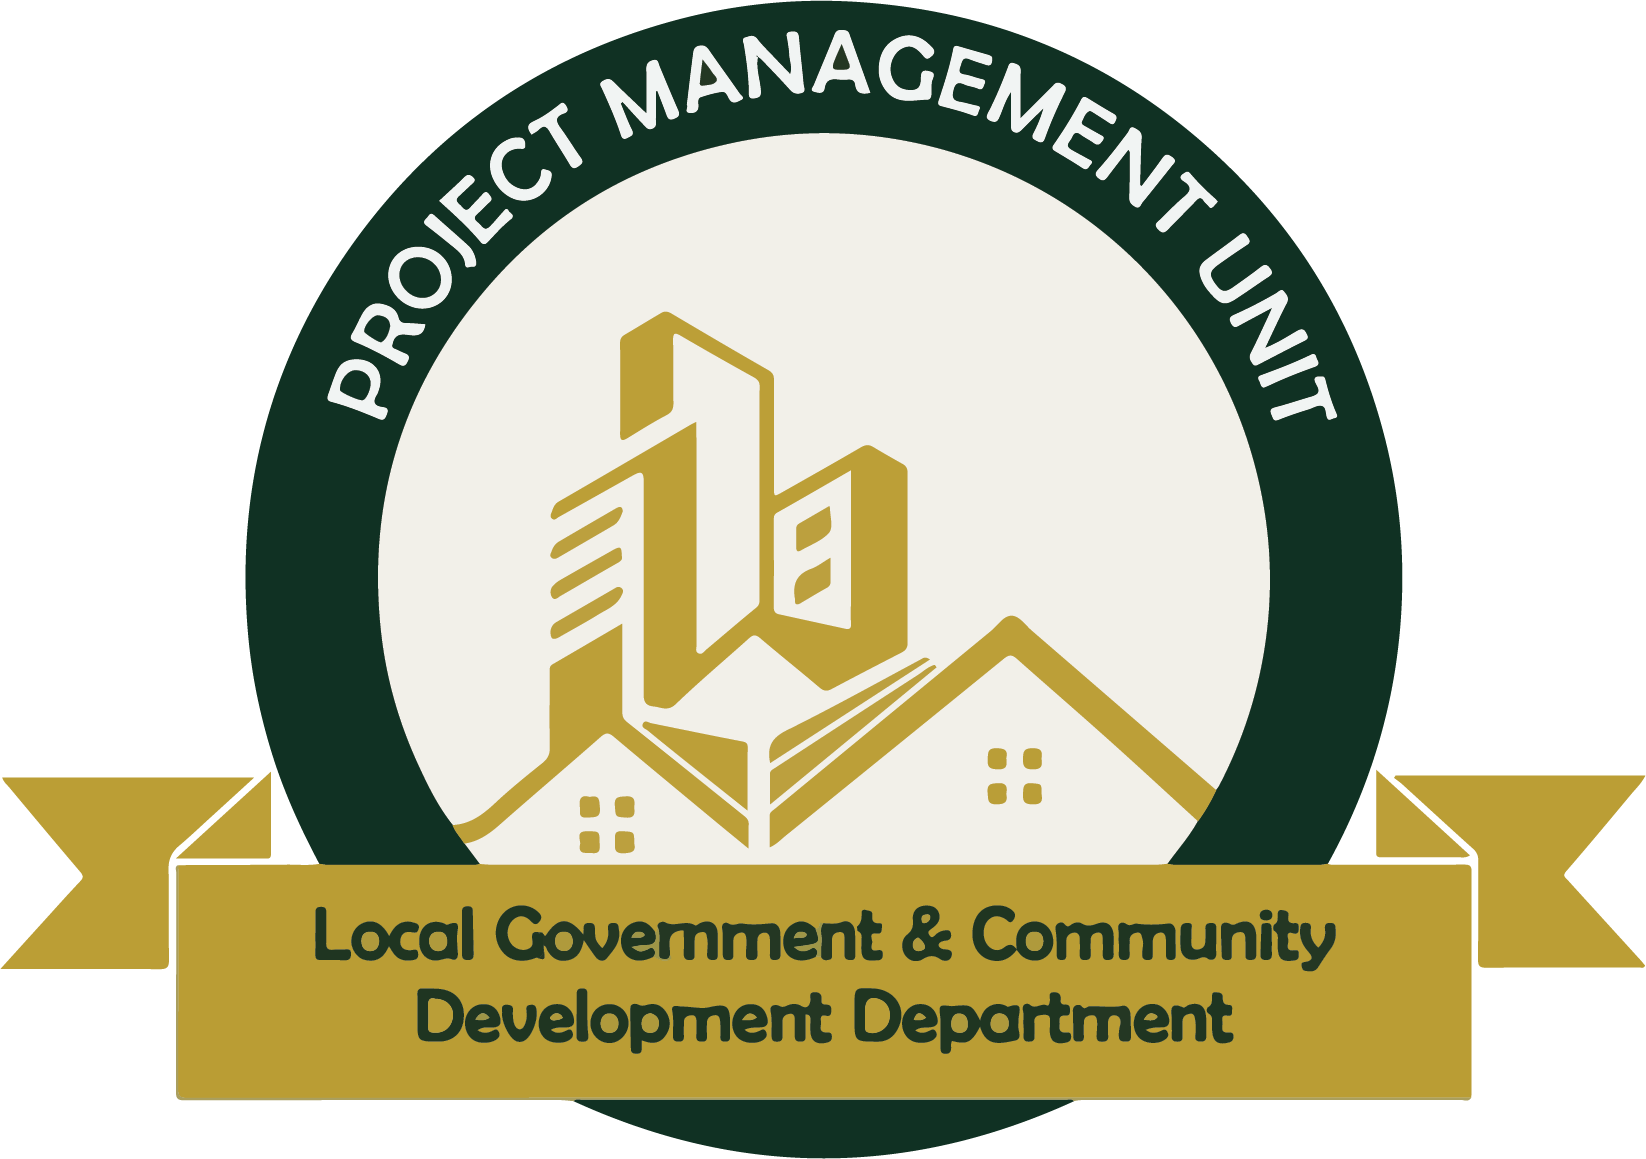 Project Management Unit